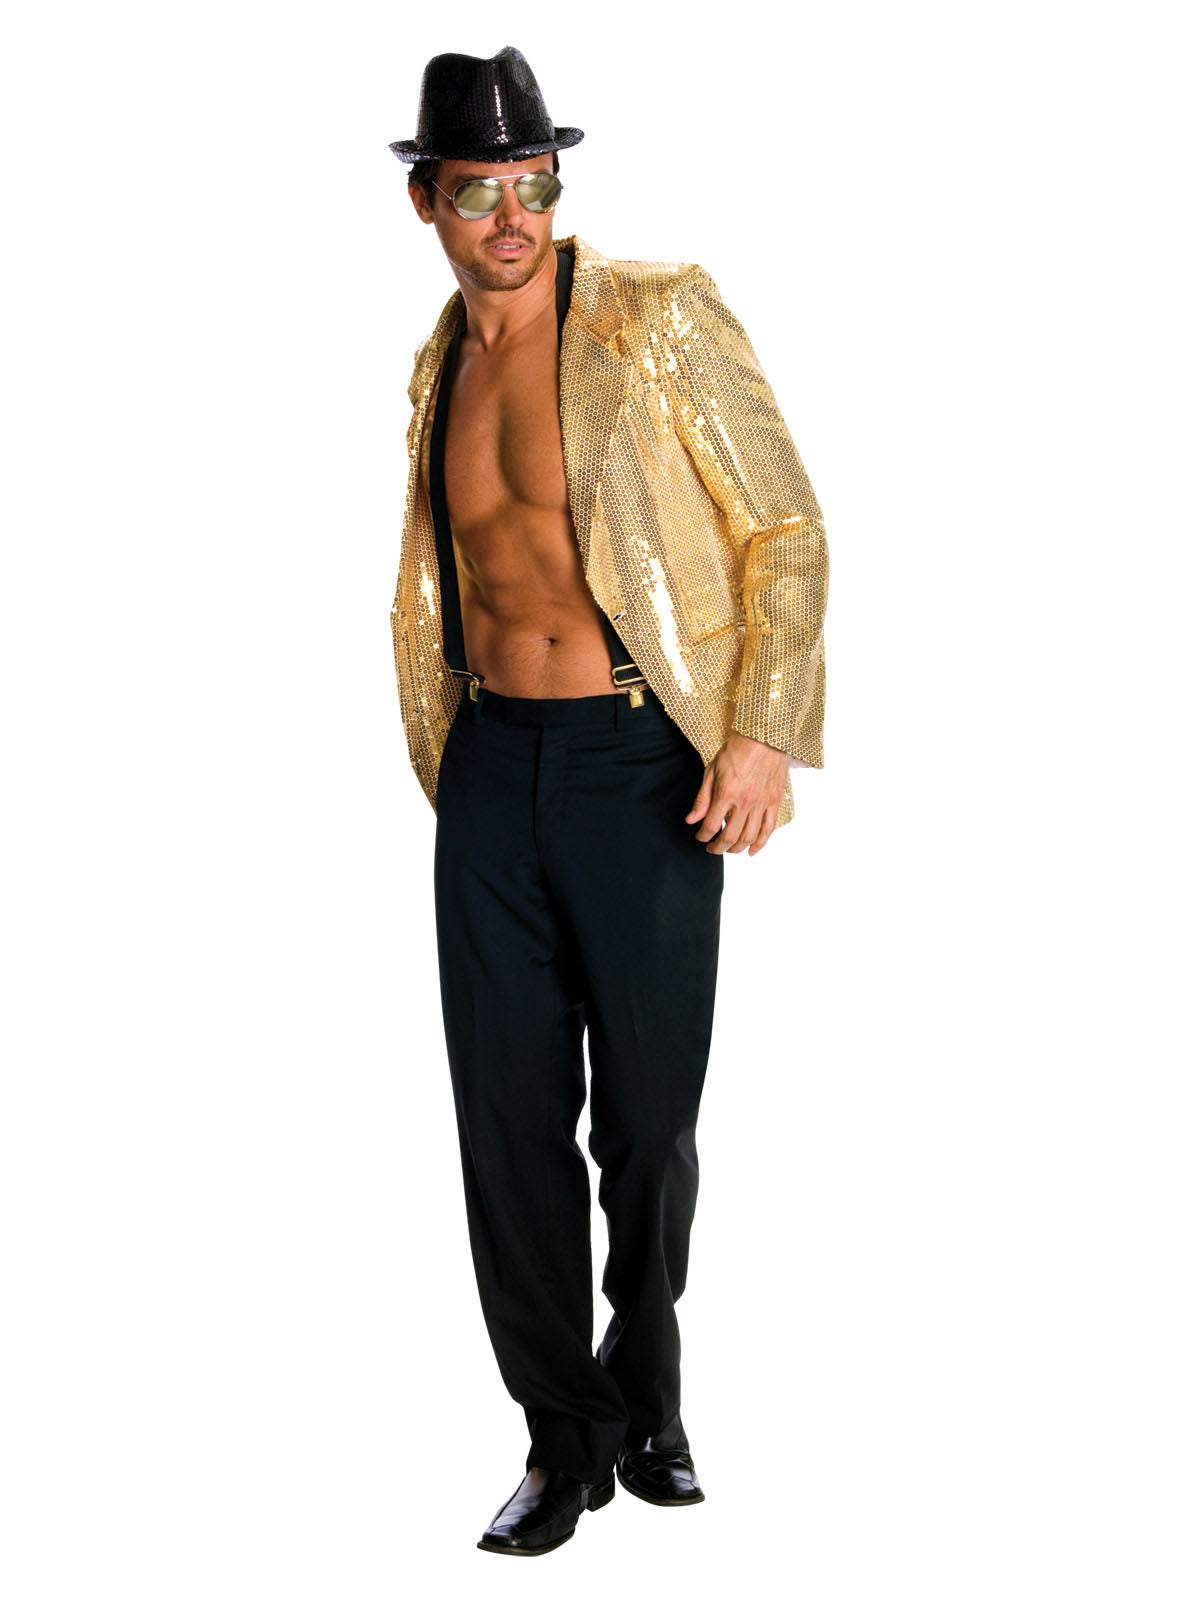 Sequin Gold Jacket Men Costume 1980's Disco Jazz Mardi Gras